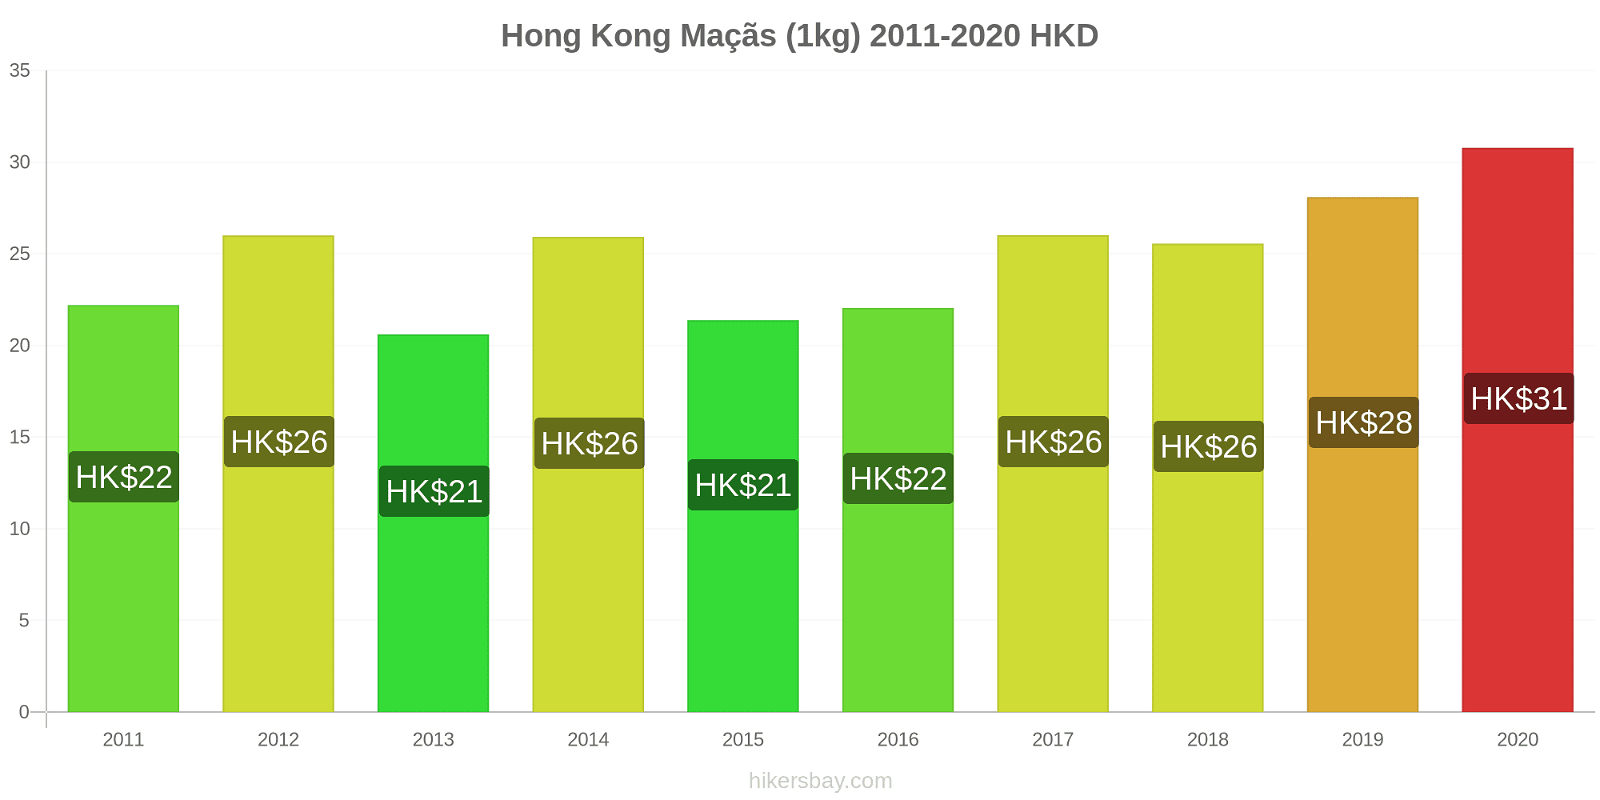 Hong Kong variação de preço Maçãs (1kg) hikersbay.com